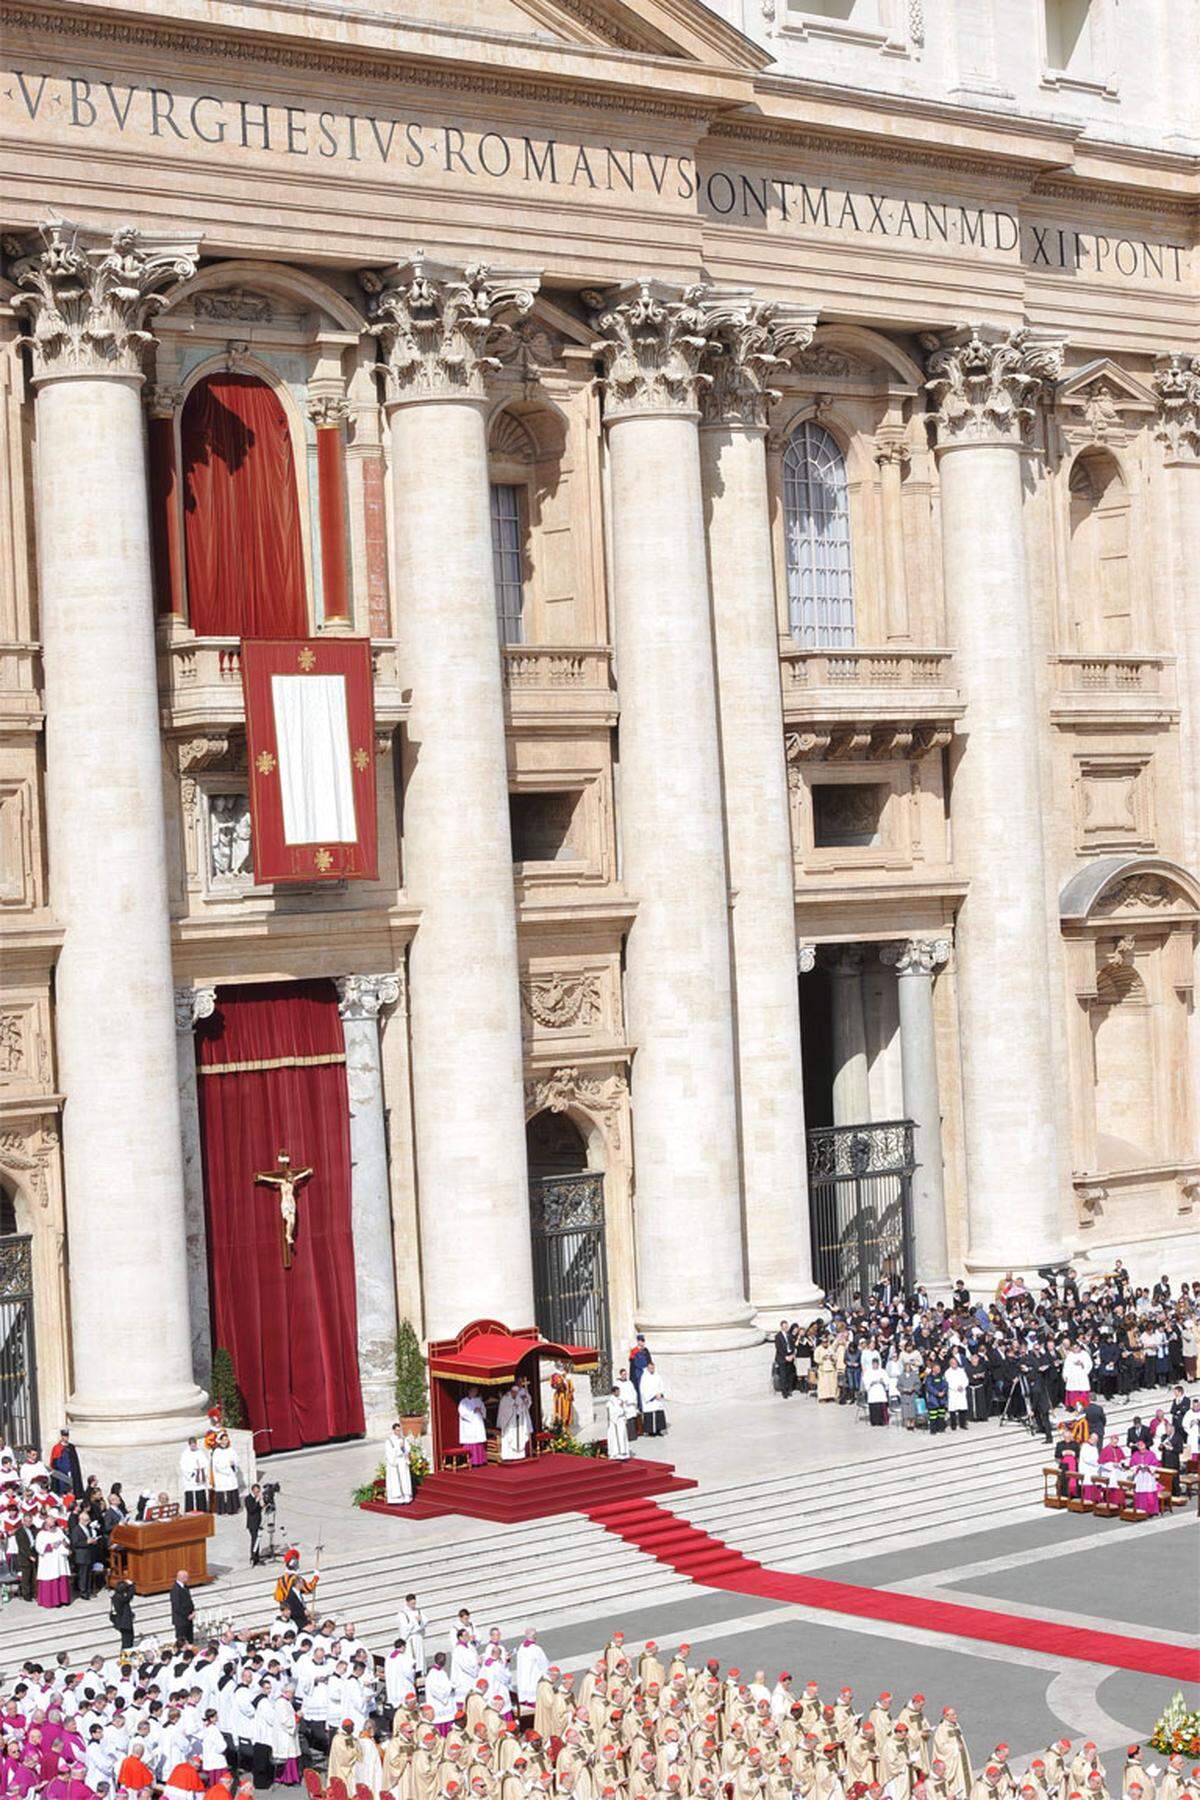 Die Messe wurde von 180 Kardinälen und Bischöfen mitzelebriert. Der Pontifex trug eine einfache weiße Soutane.